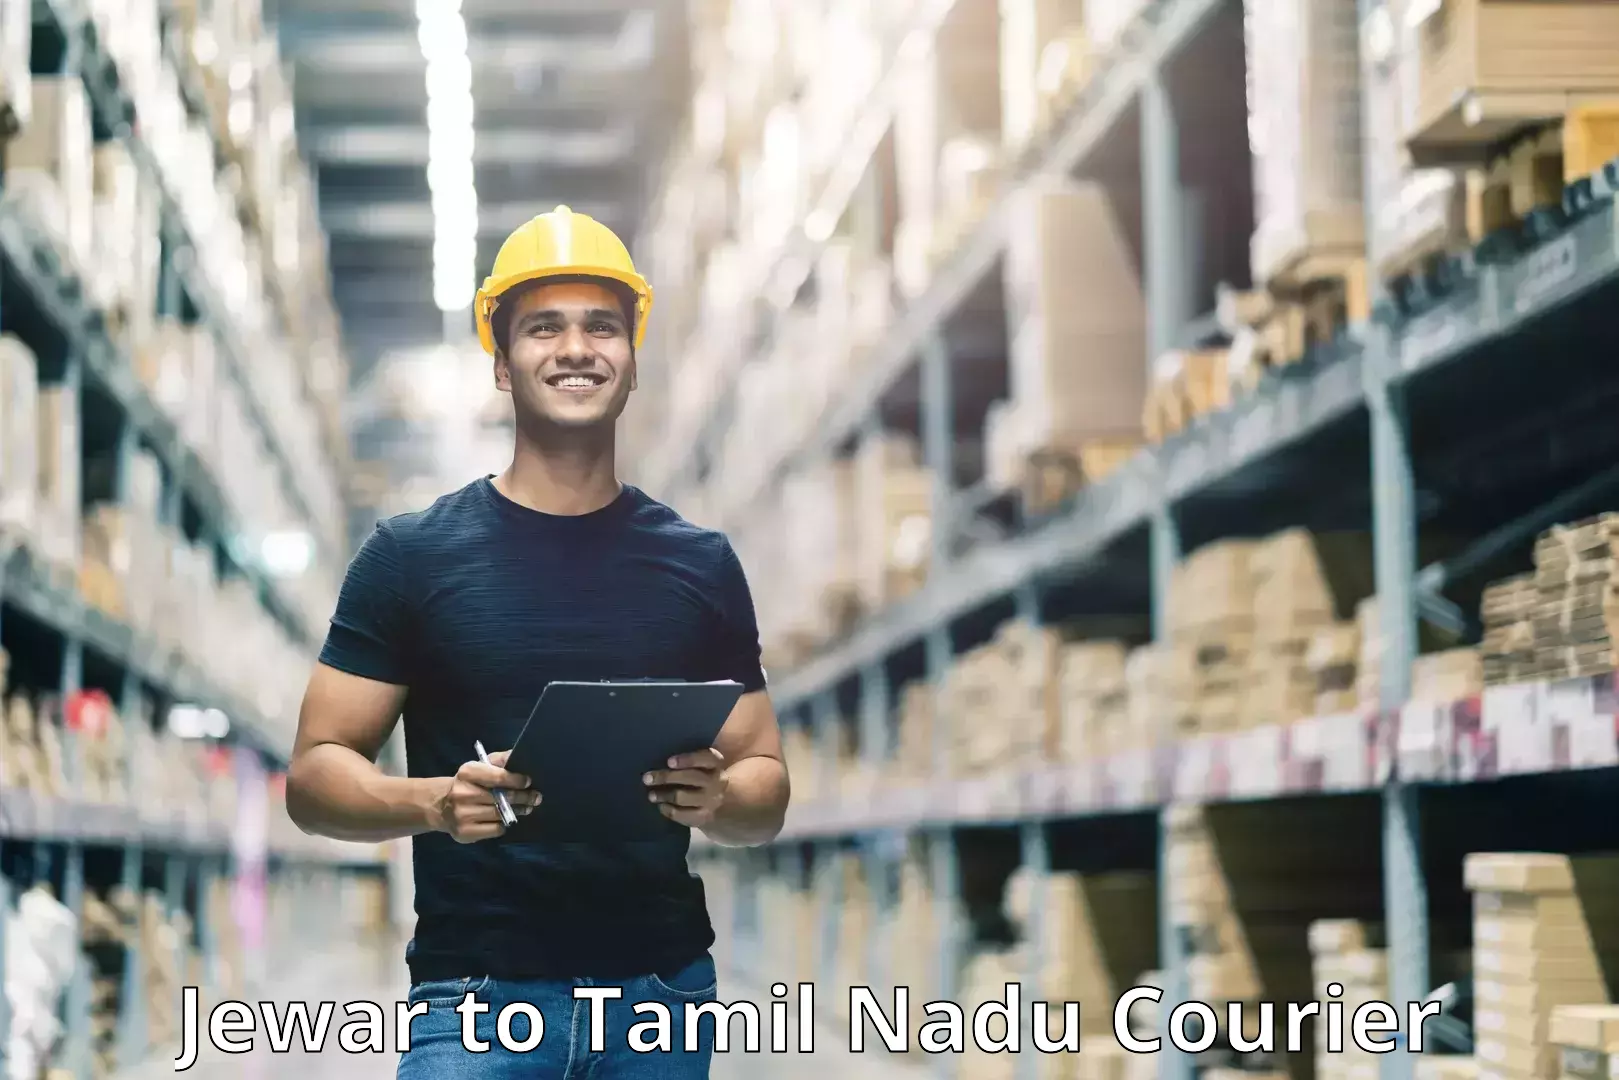 Next-generation courier services Jewar to Tamil Nadu